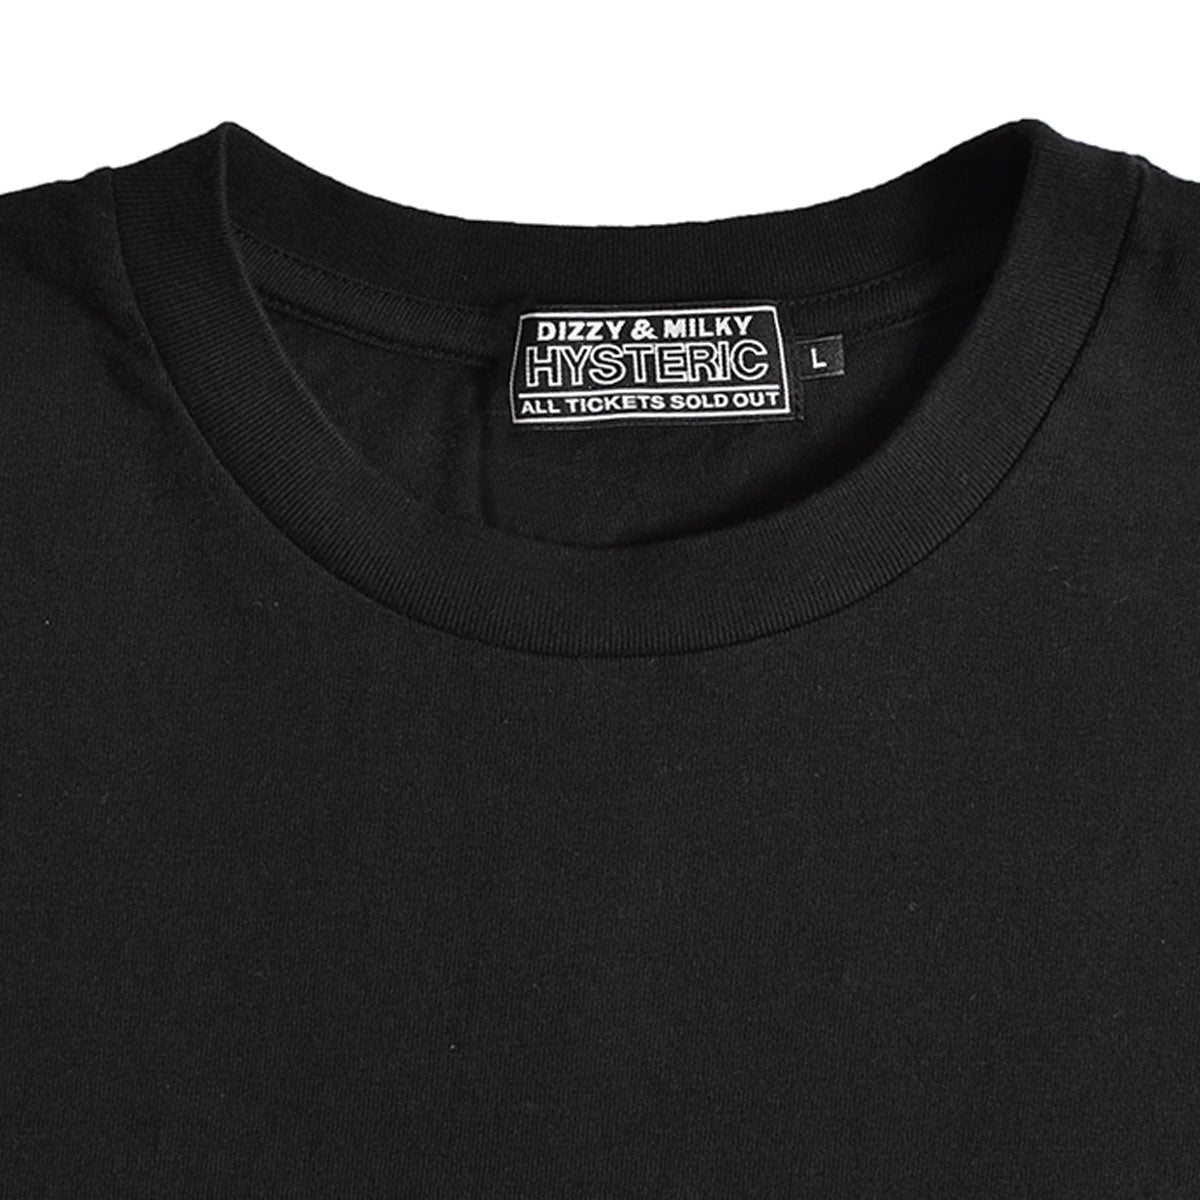 先行販売 DIZZY & MILKY HYSTERIC 半袖 Tシャツ ブラック 黒 - トップス